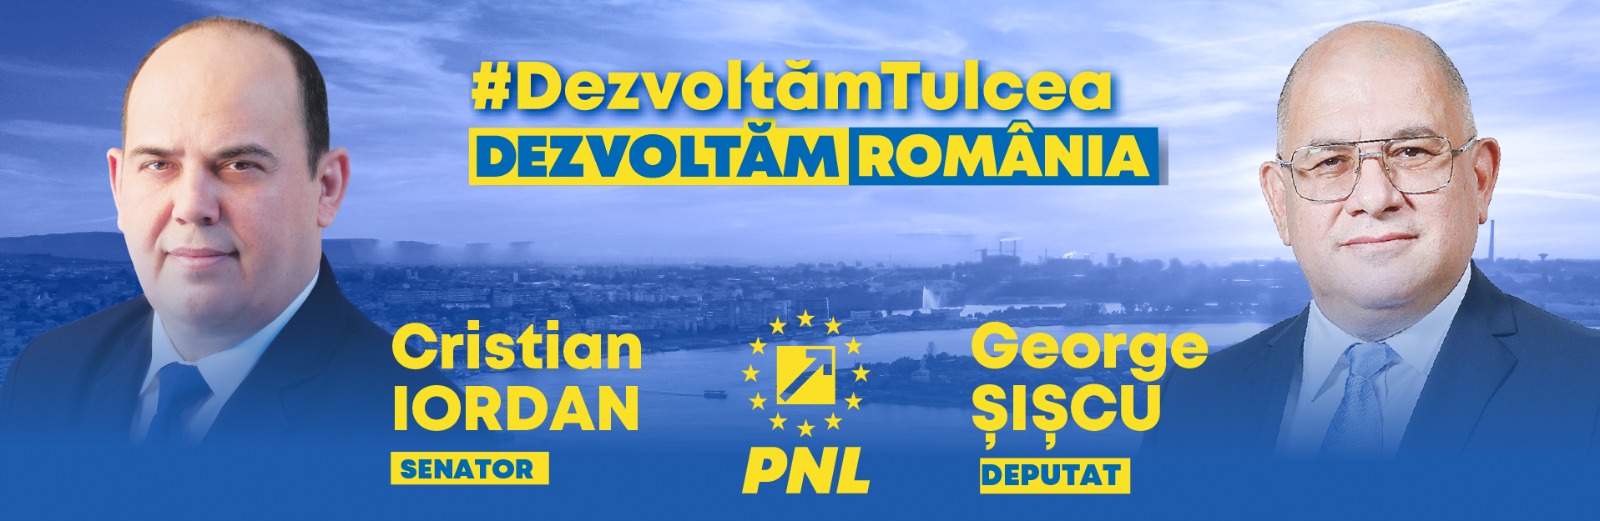 Declarație politică George Șișcu, Deputat PNL de Tulcea:  „Nu ne permitem să venim în Parlament acum cu proiectul de buget, pentru ca PSD să-l ciopârţească şi să propună tot felul de aberaţii financiare. Vom câştiga alegerile, apoi vom aproba rapid bugetul de stat.“ 